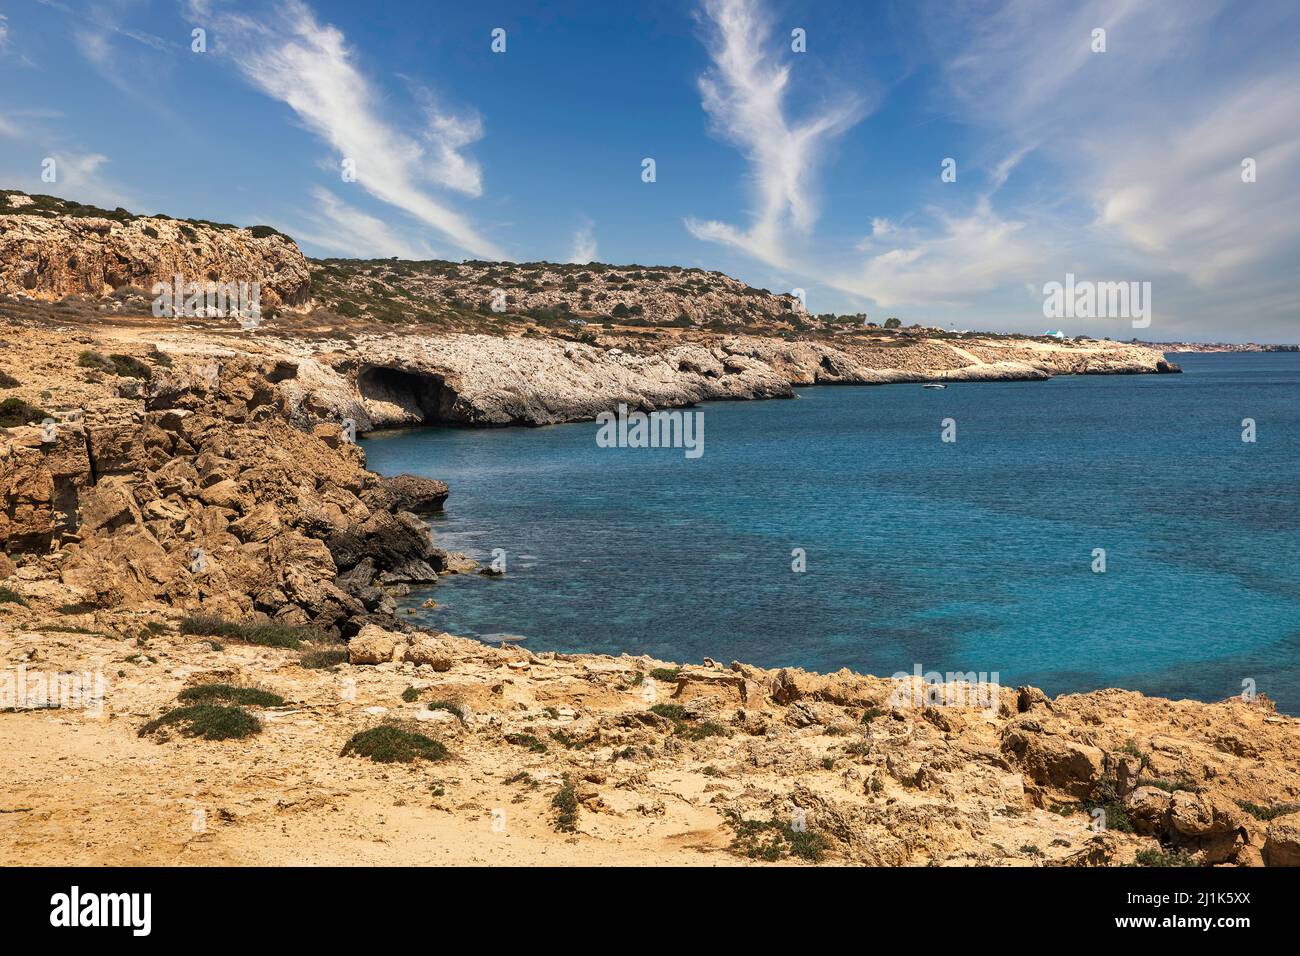 Seascape Cape Greco Peninsula Park, Zypern. Es ist eine bergige Halbinsel mit einem Nationalpark, Felspfaden, einer türkisfarbenen Lagune und einem Natursteinquark Stockfoto